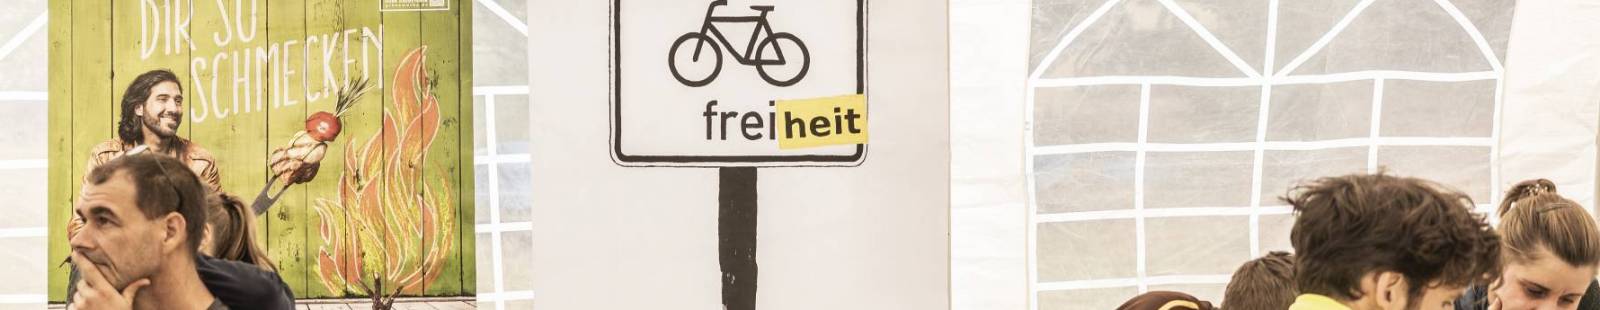 Freilauf DIY Bike Camp Wriezen Brandenburg Berlin Fahrradbande Mitradgelegenheit BUND Keiper Schwetje